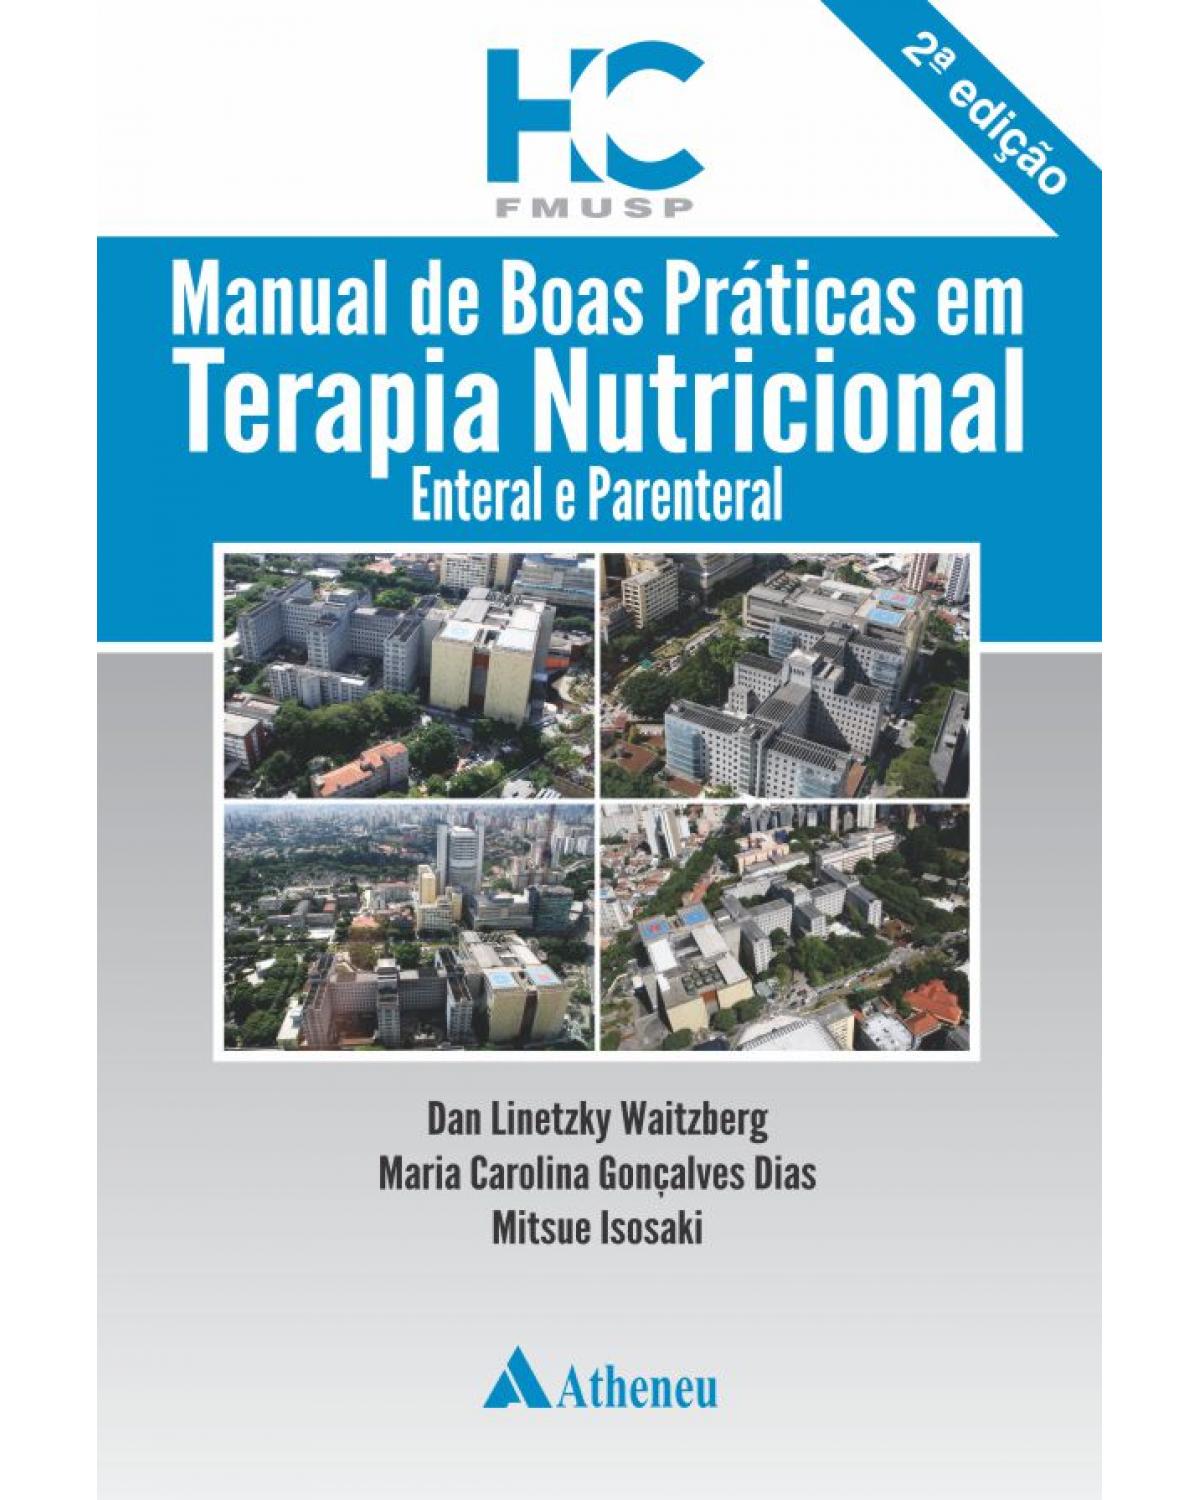 Manual de boas práticas em terapia nutricional - enteral e parenteral - 2ª Edição | 2015